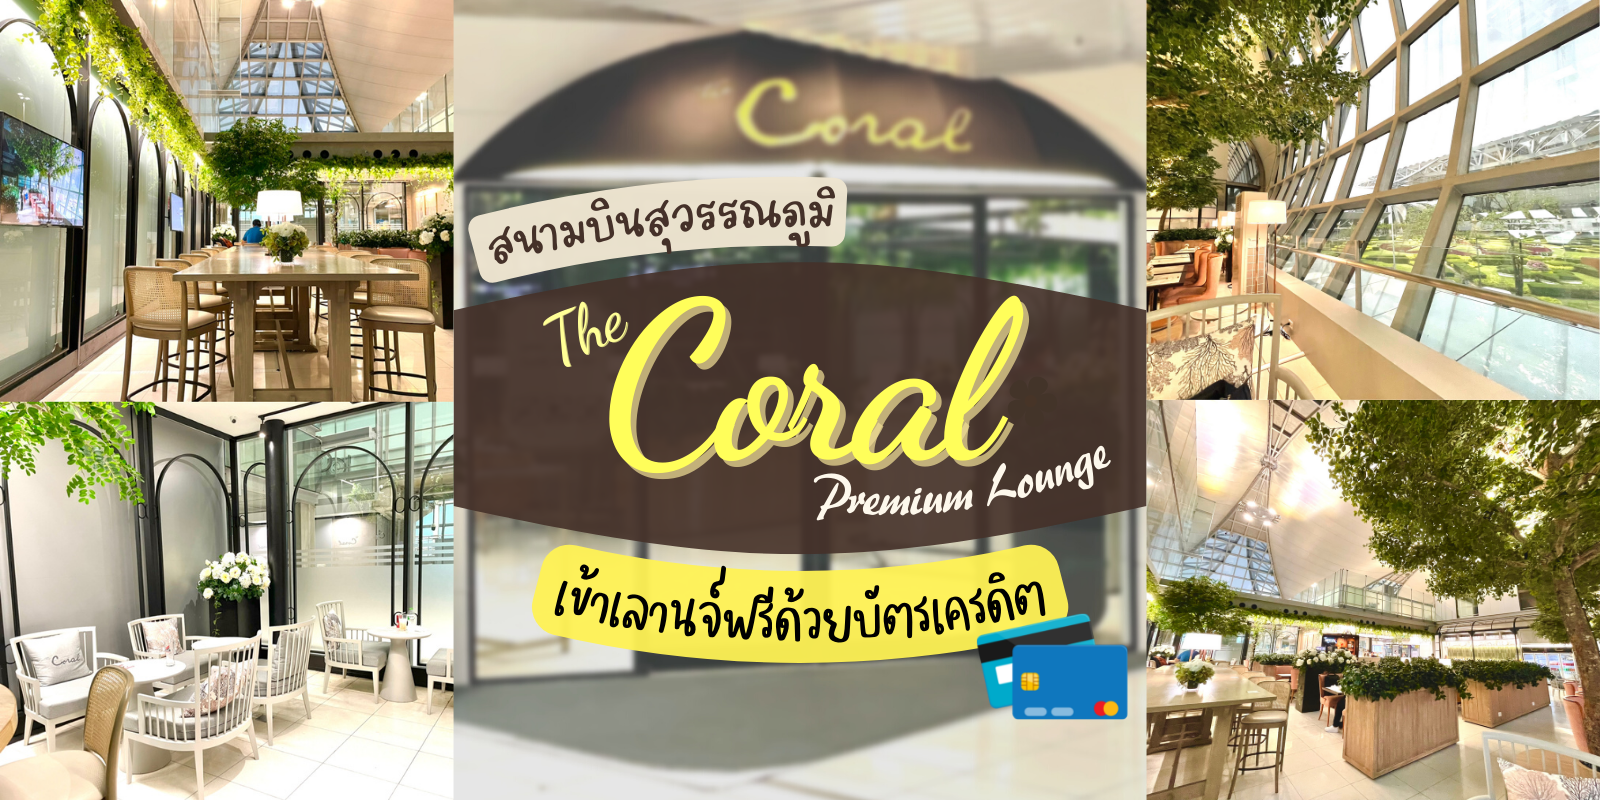 รีวิว The Coral Premium Lounge สนามบินสุวรรณภูมิ เข้าเลานจ์สนามบินฟรี ! ด้วย